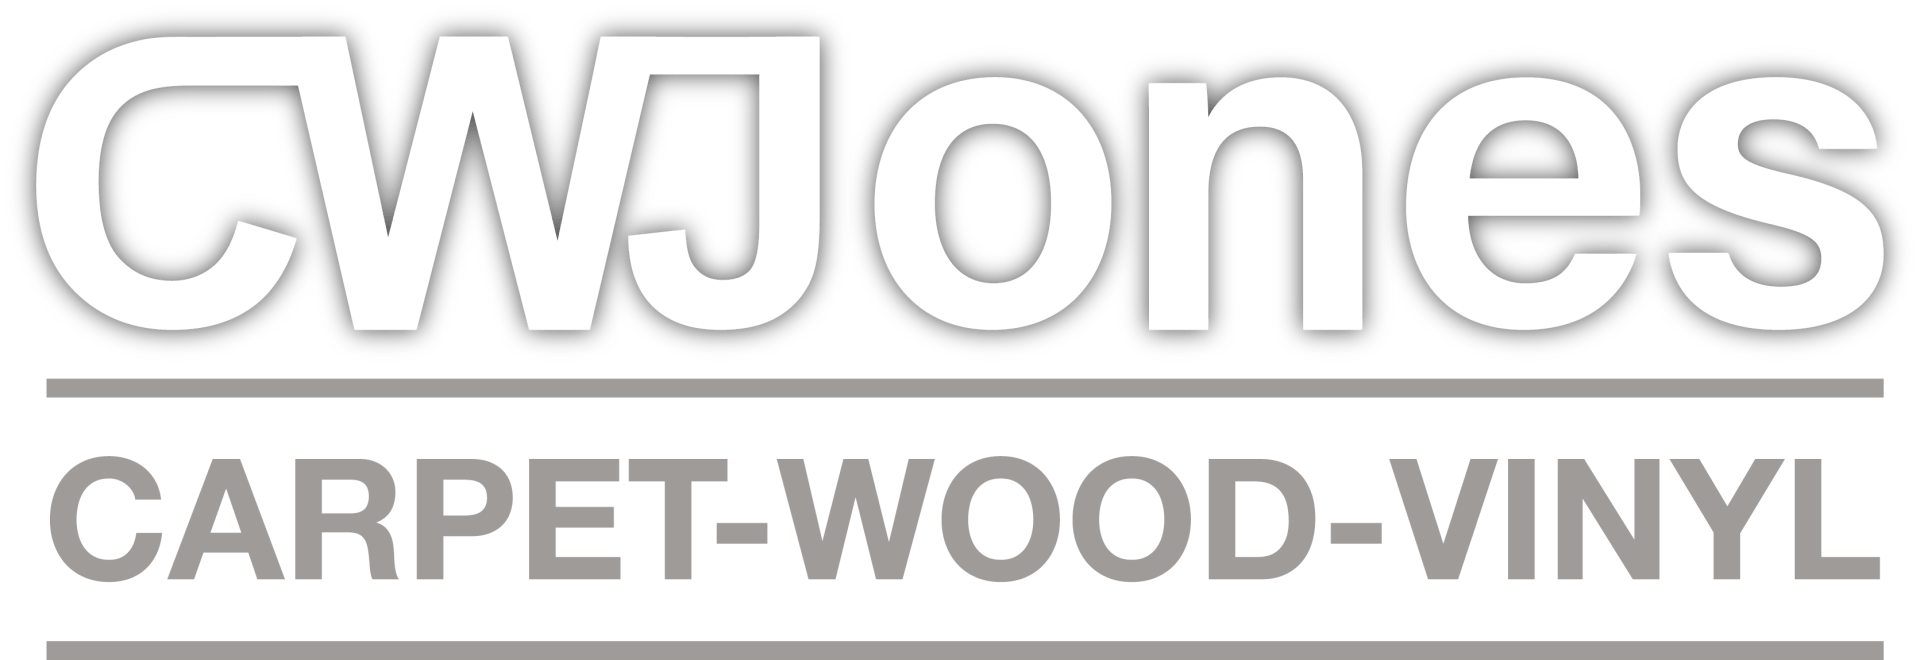 CWJones Carpet-wood-vinyl Logo